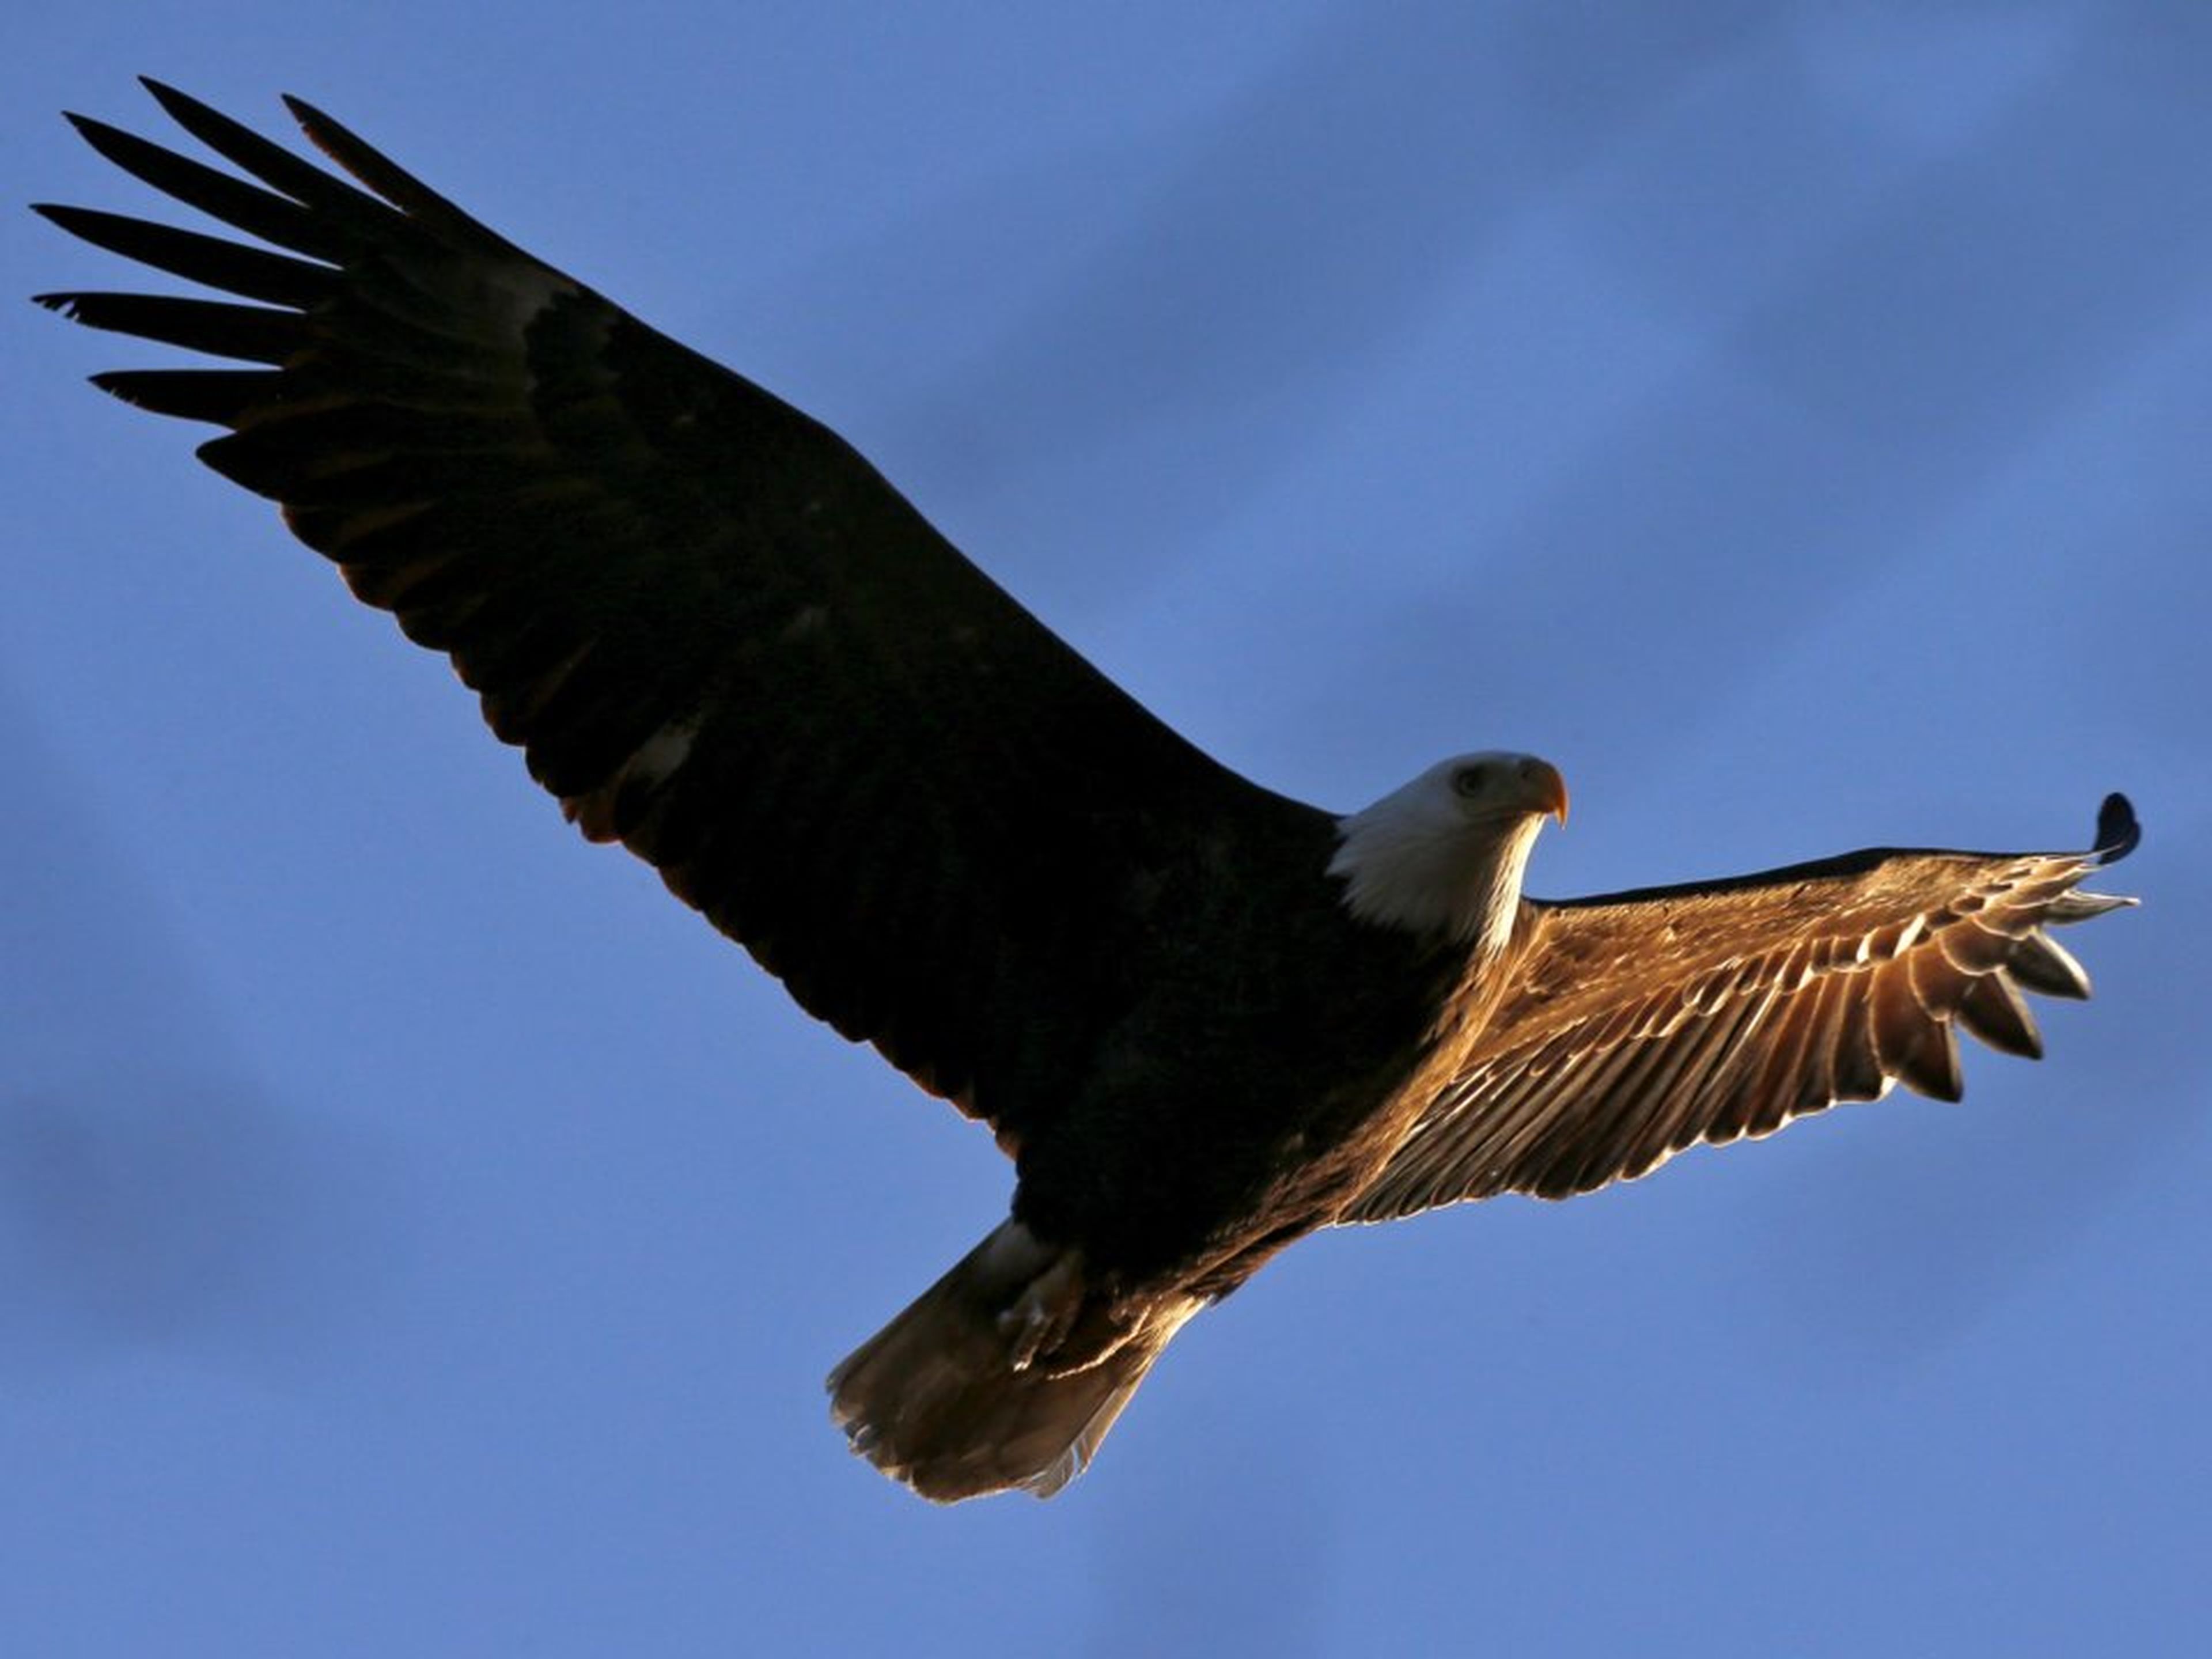 Los mecanismos del ala de águila han sido incluidos en las alas y cola del avión.